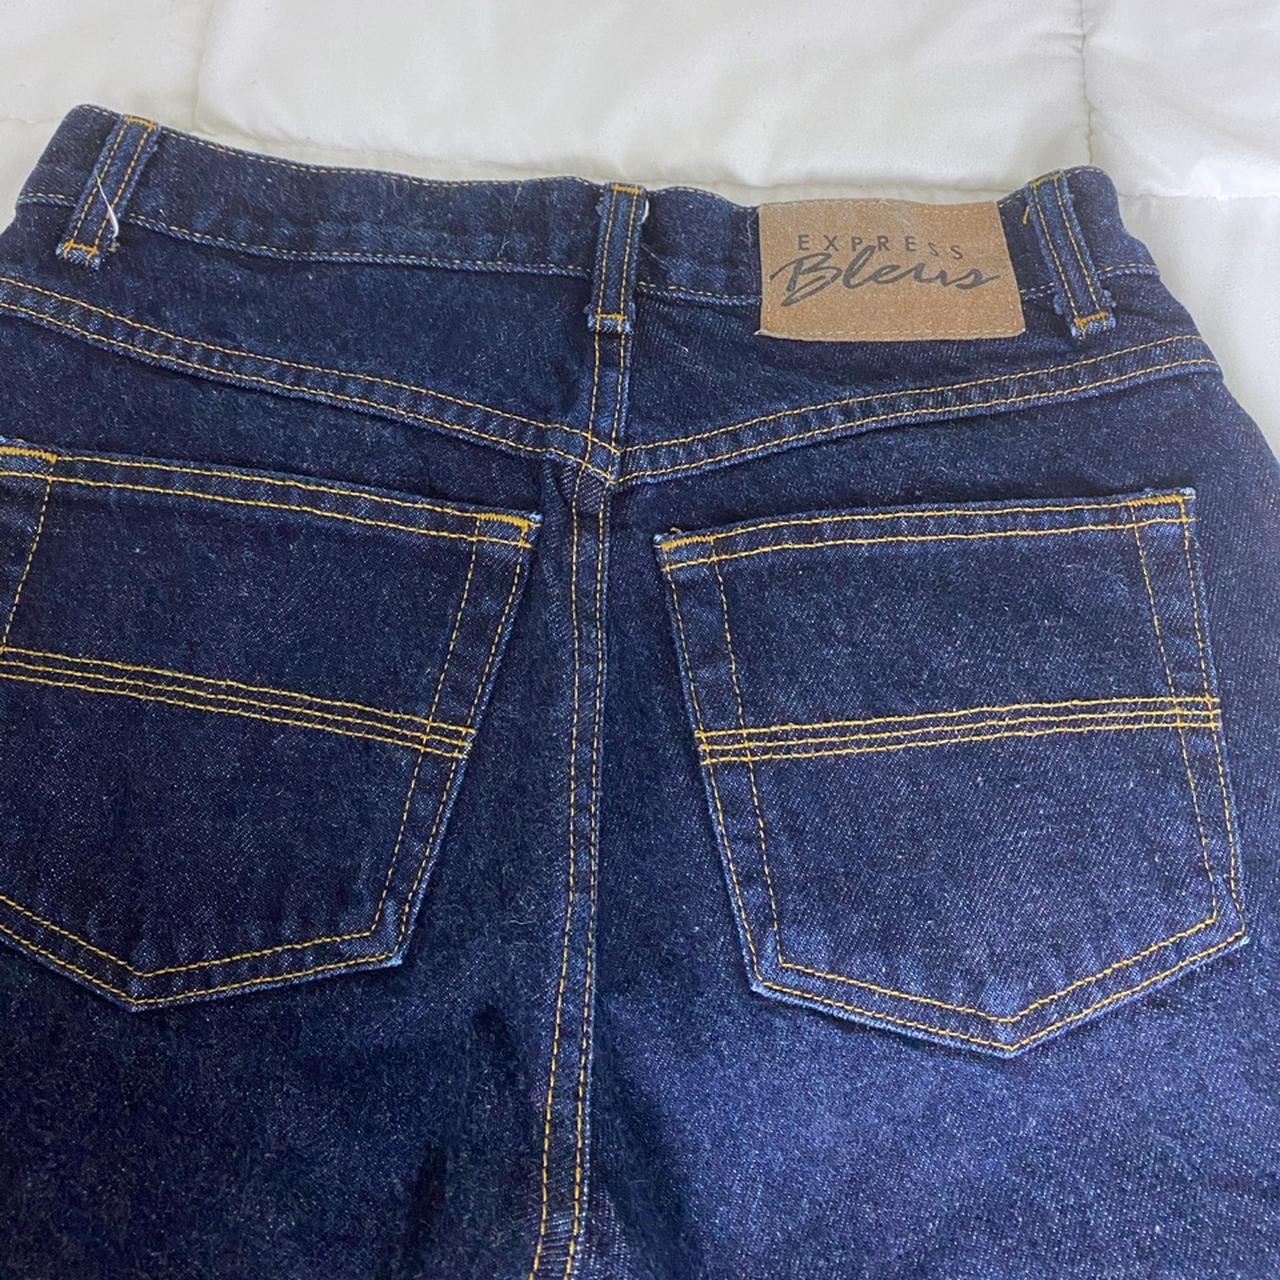 Vintage 90s Express Bleus High Rise Jeans Beautiful... - Depop